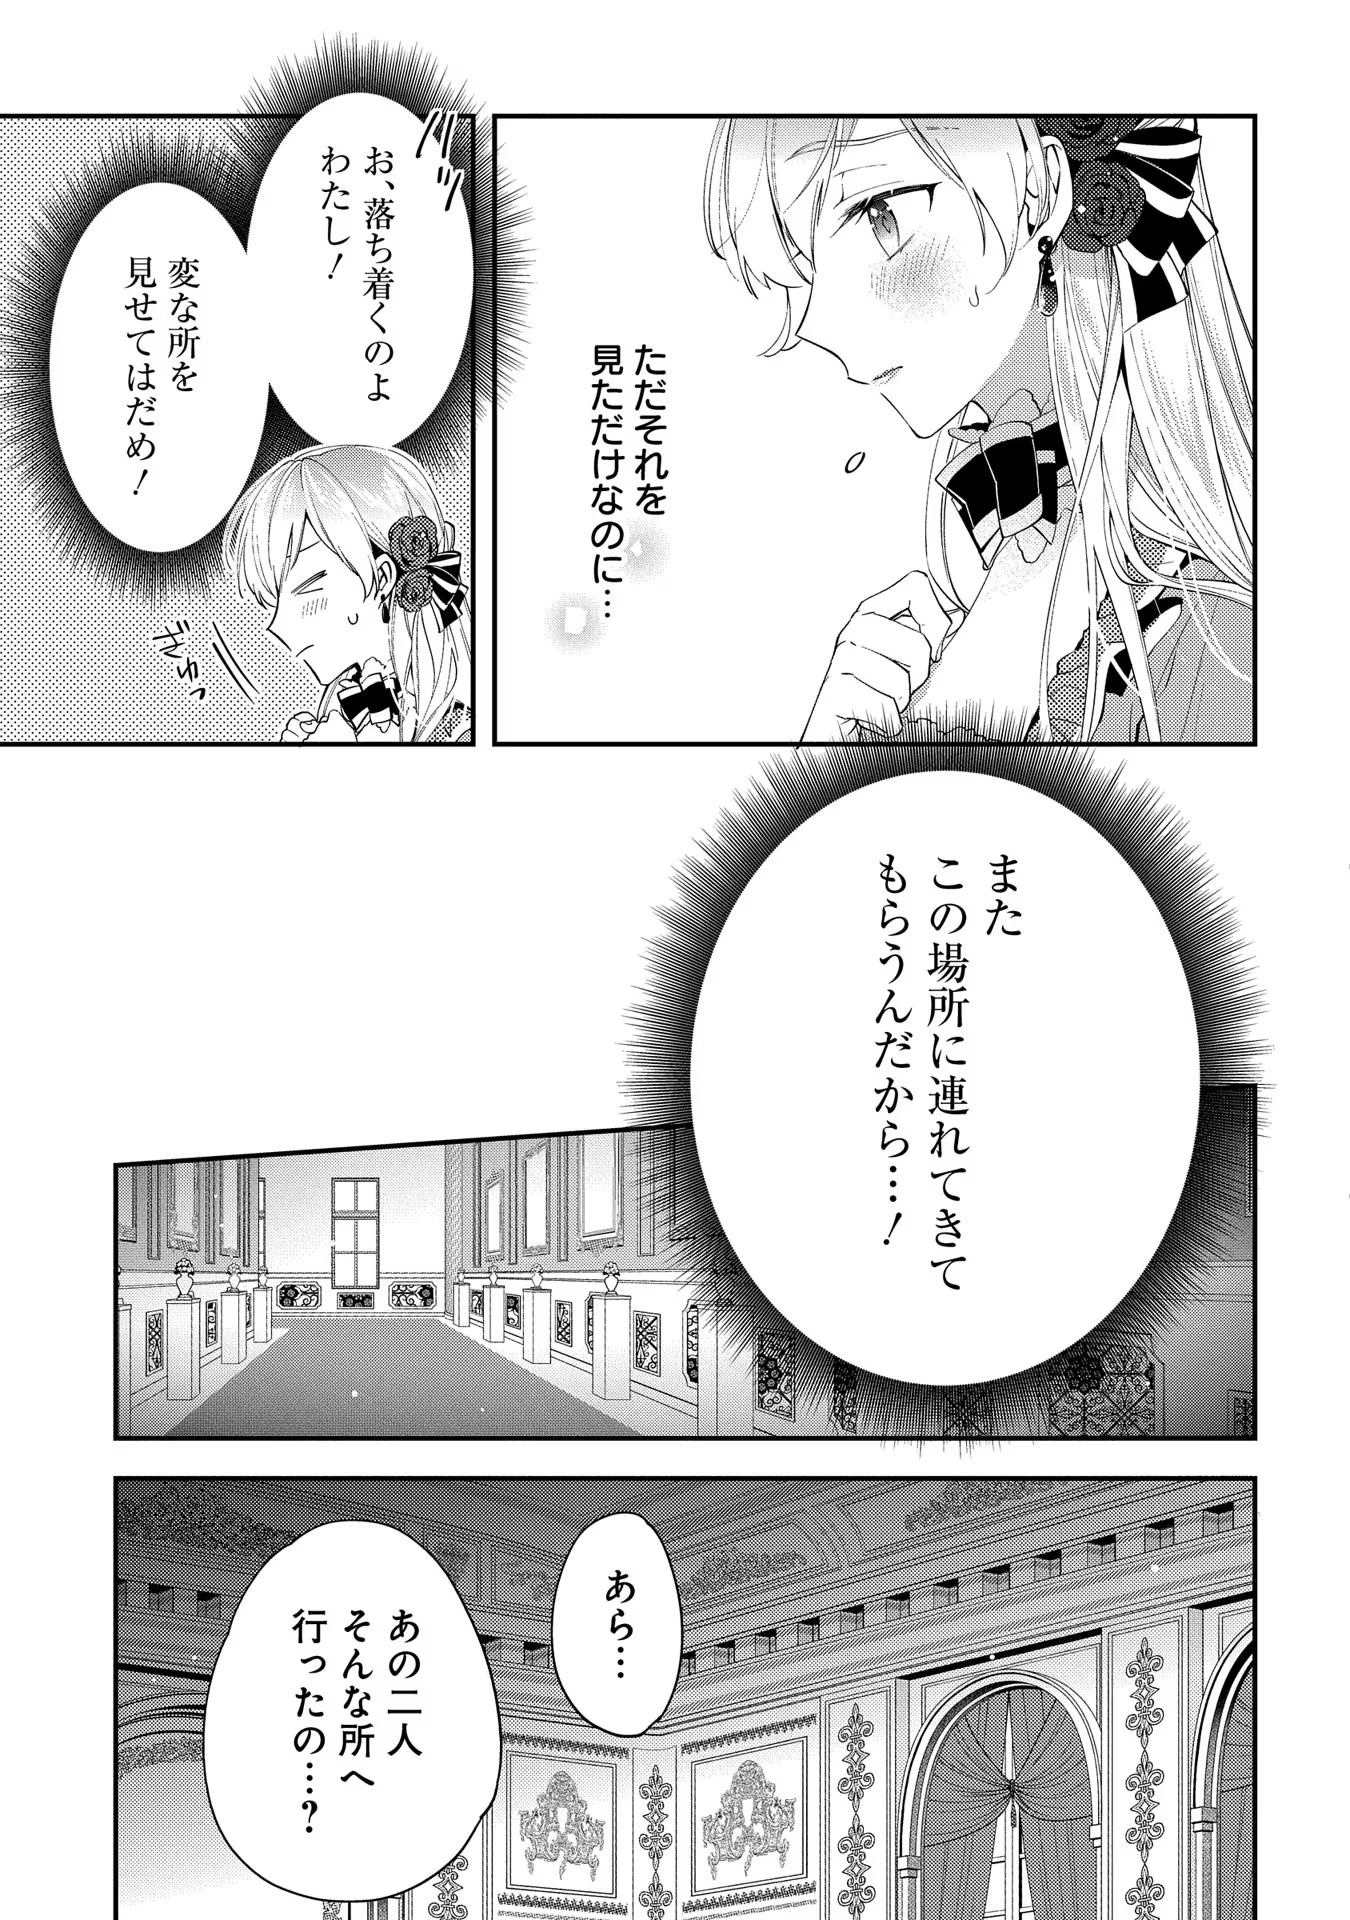 Outaishi ni Konyaku Hakisareta no de, Mou Baka no Furi wa Yameyou to Omoimasu - Chapter 5 - Page 29